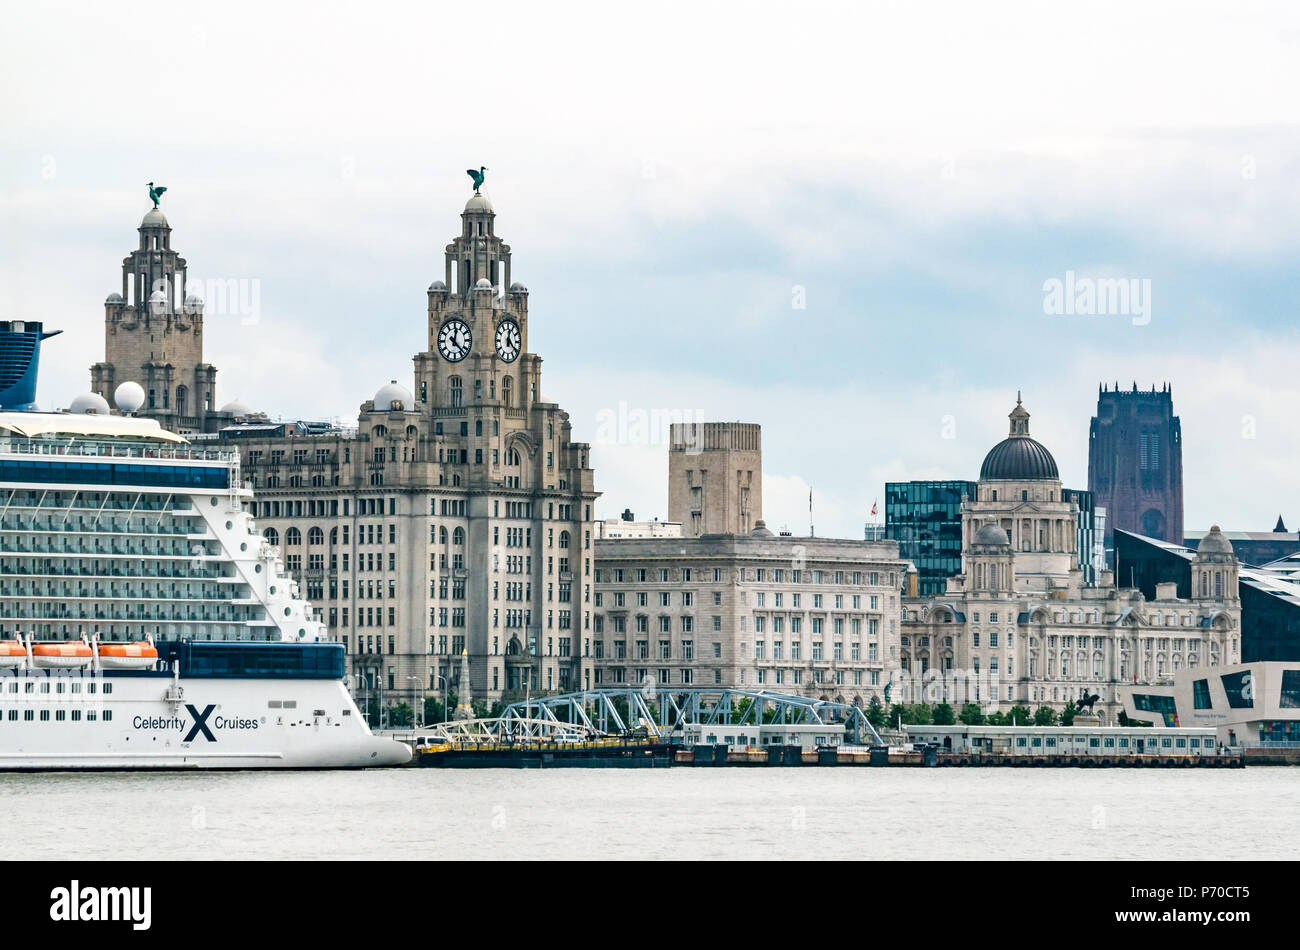 Blick auf die Uhrtürme des Royal Lever Building mit Lebervögel und den größten Uhren Großbritanniens, Celebrity Cruise Ship, Pier Head, Liverpool, England, Großbritannien Stockfoto